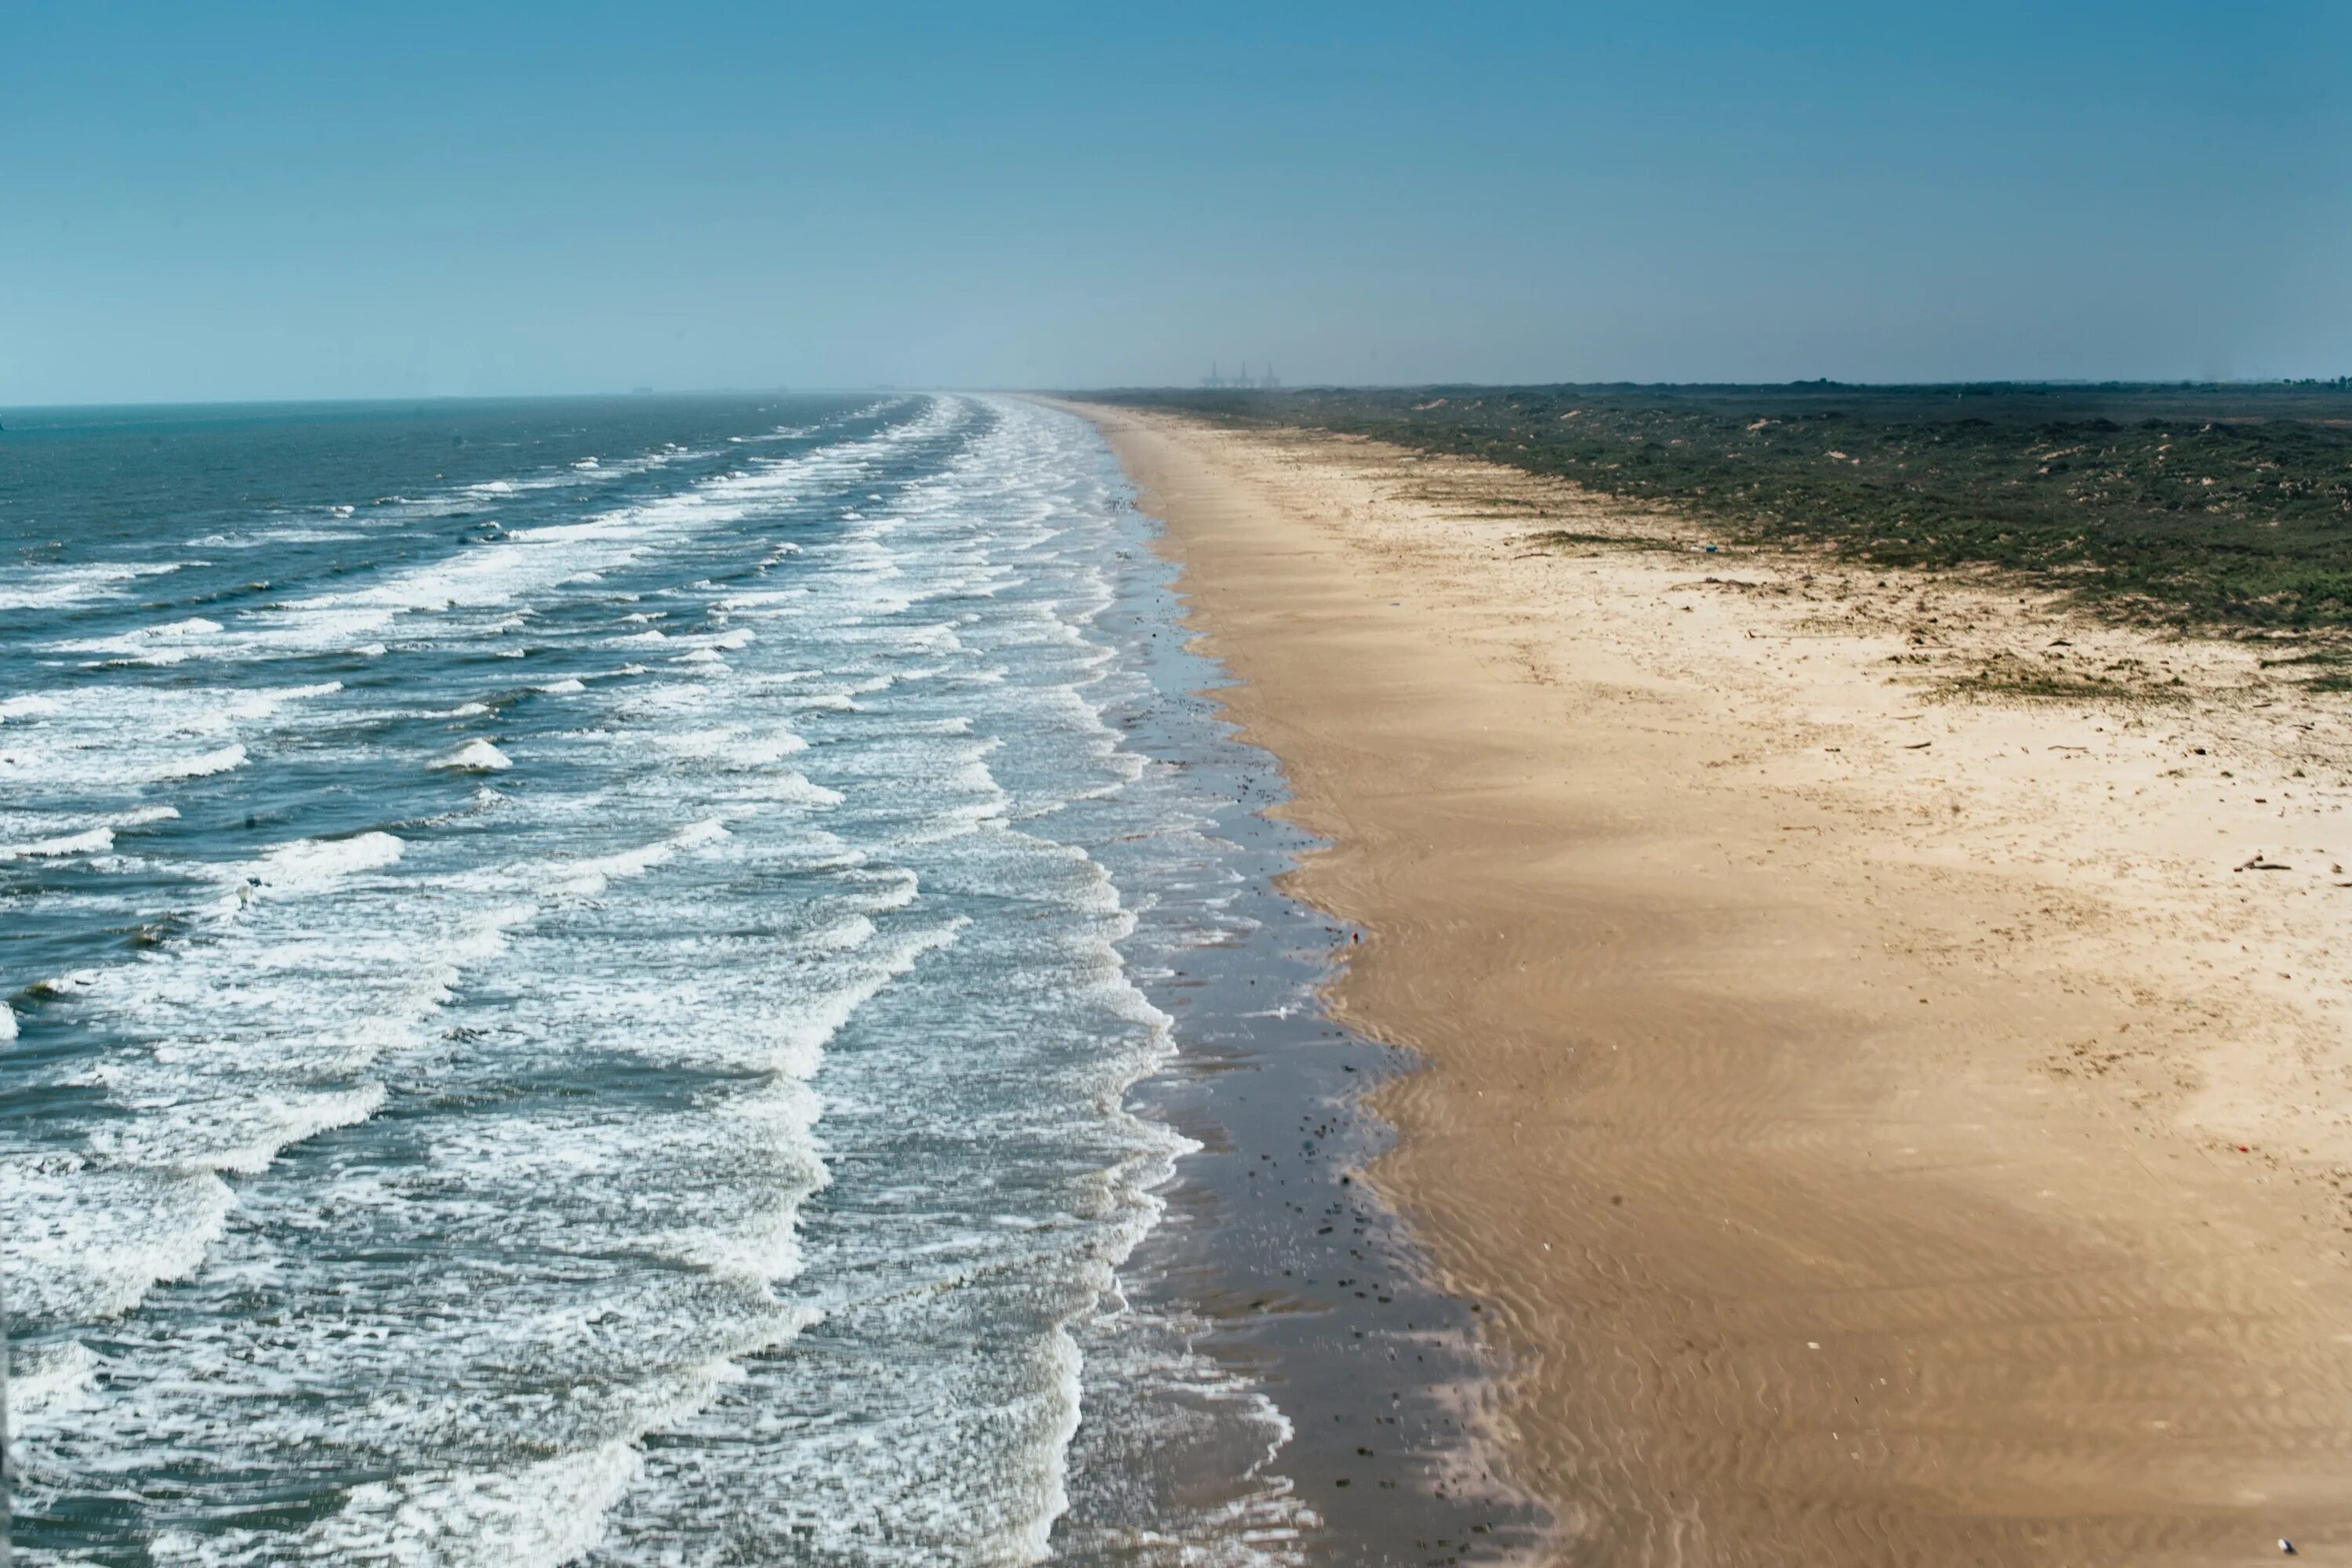 Волна береговое. Техас побережье мексиканского залива. Море. Волны на берегу. Прибрежные воды морей.